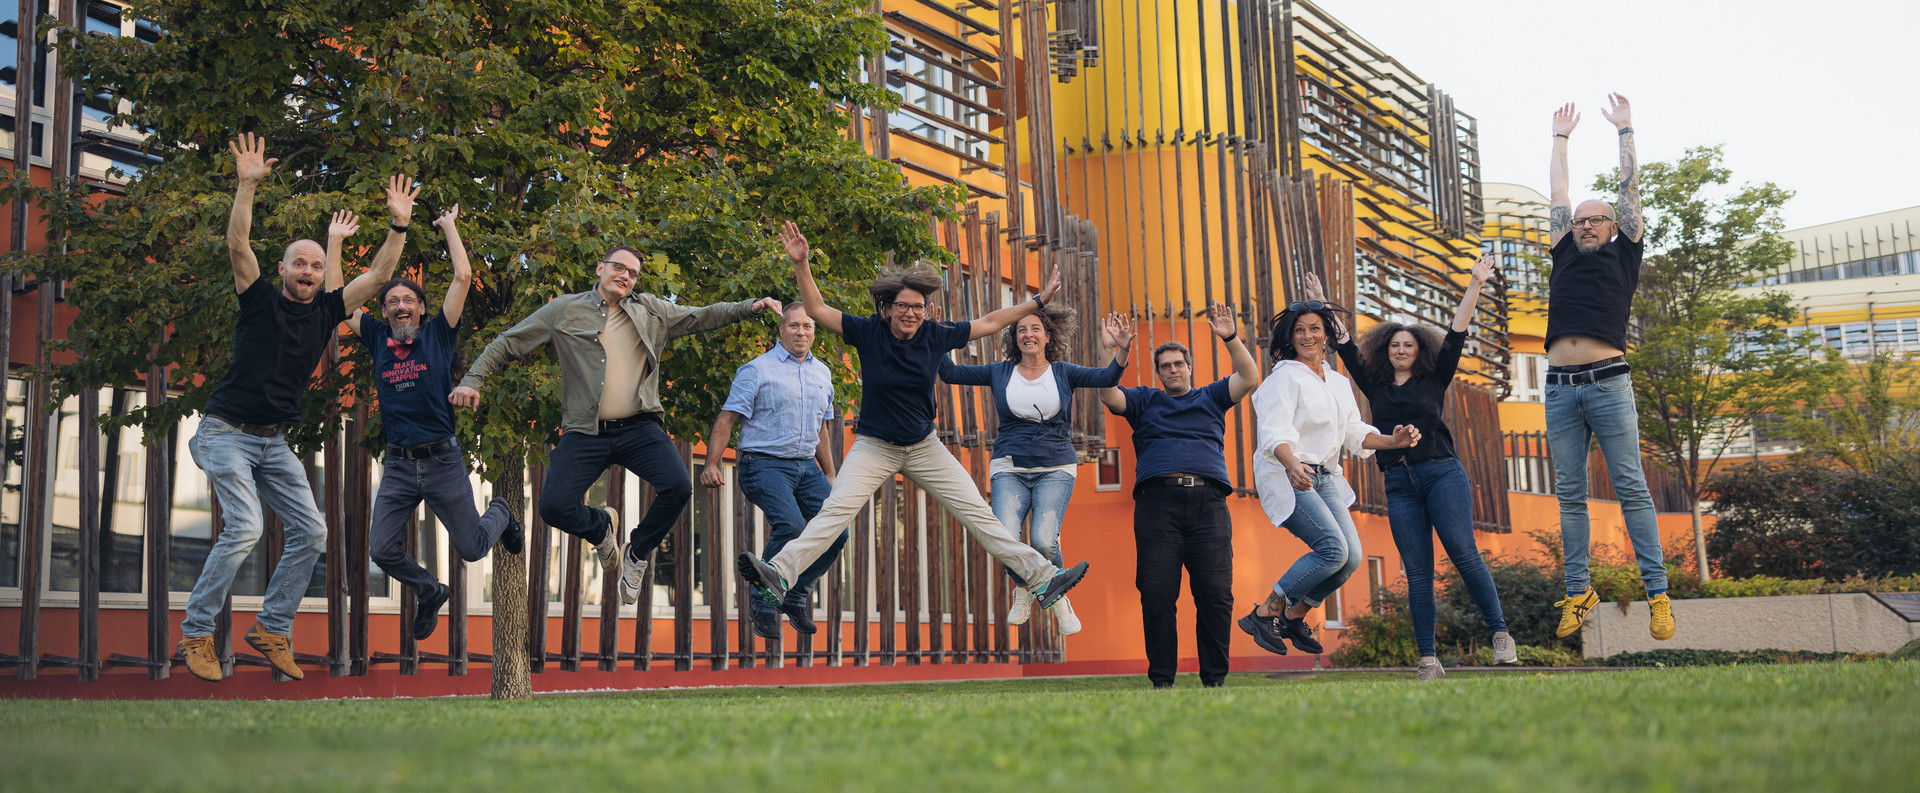 Plan2net Team springt gemeinsam auf dem Campus der WU Wien in die Luft